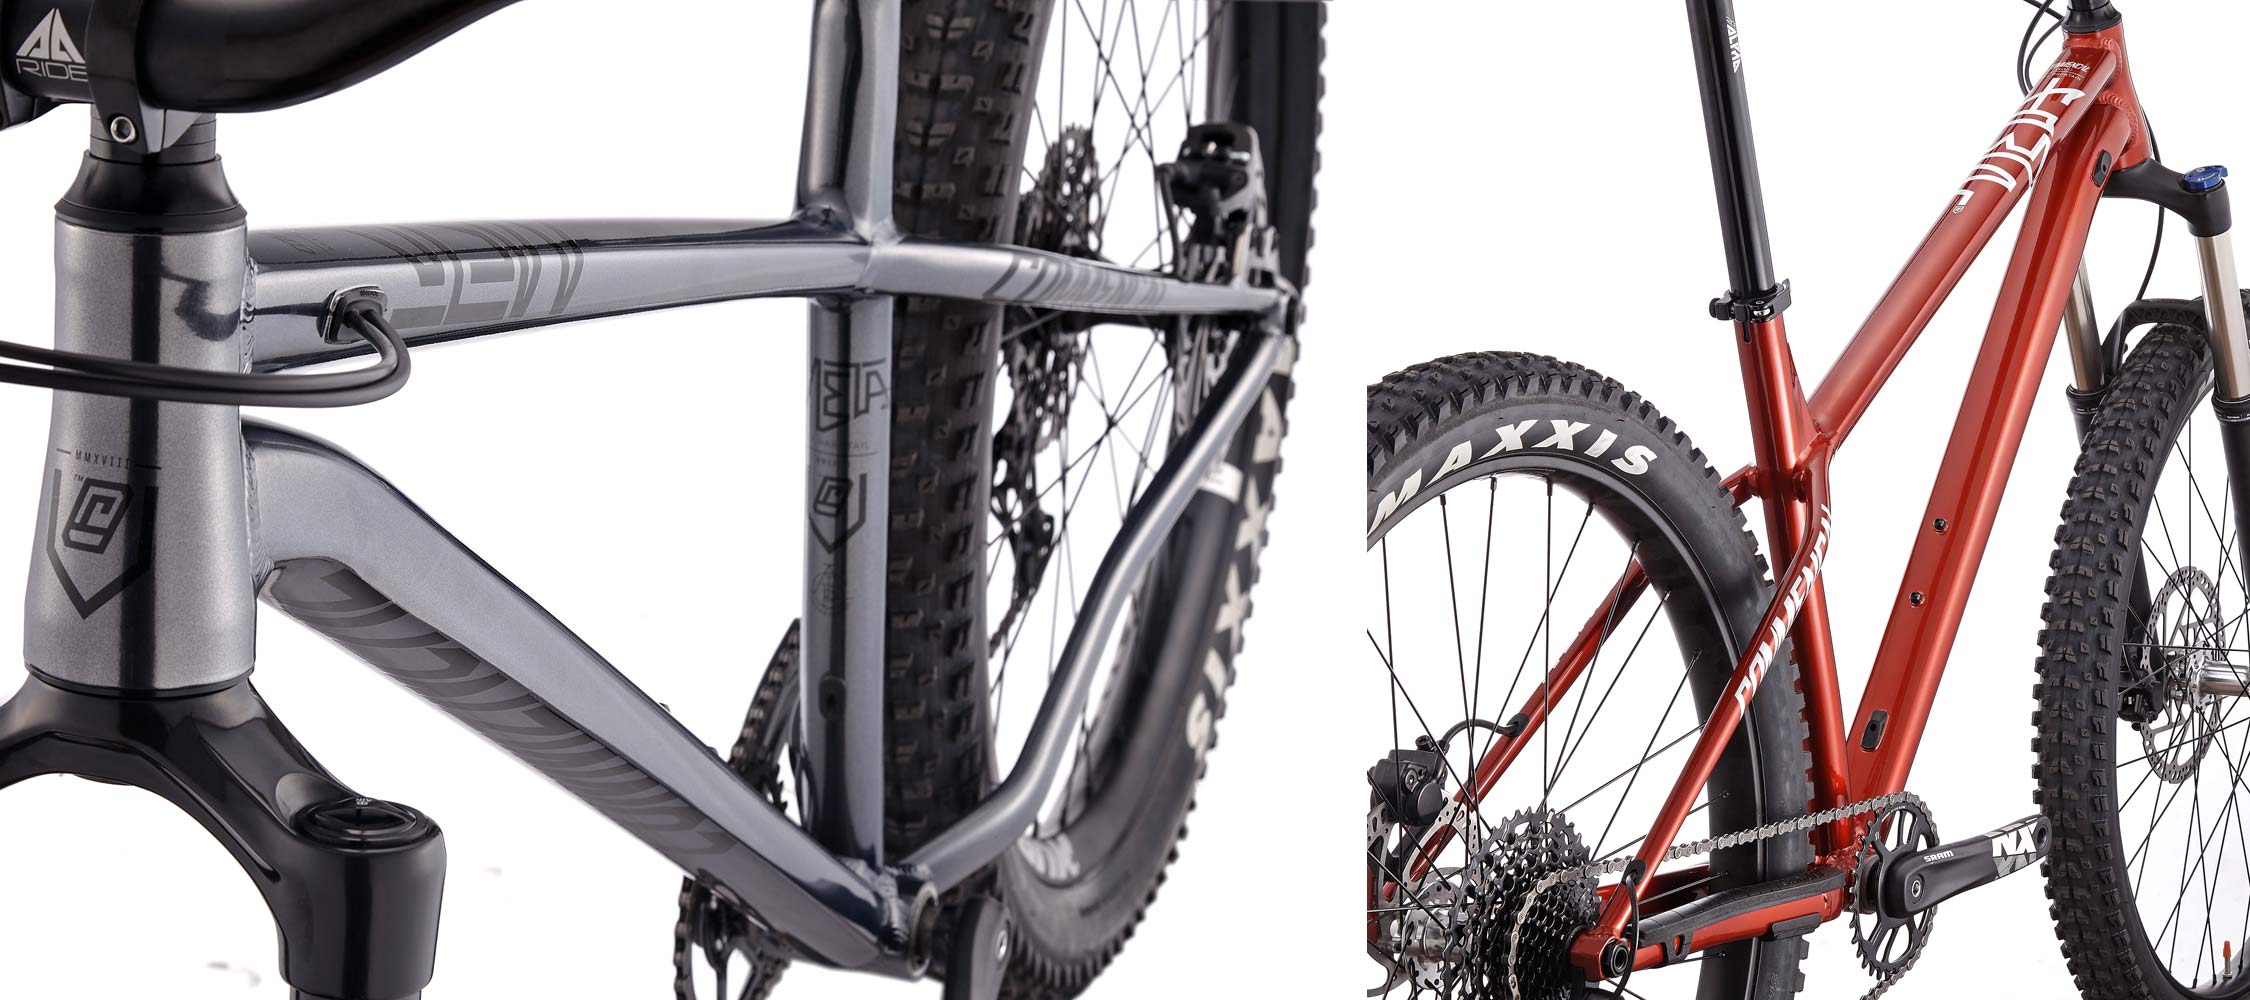 2018 Meta HT AM aluminum 27.5+ enduro hardtail mountain bike details